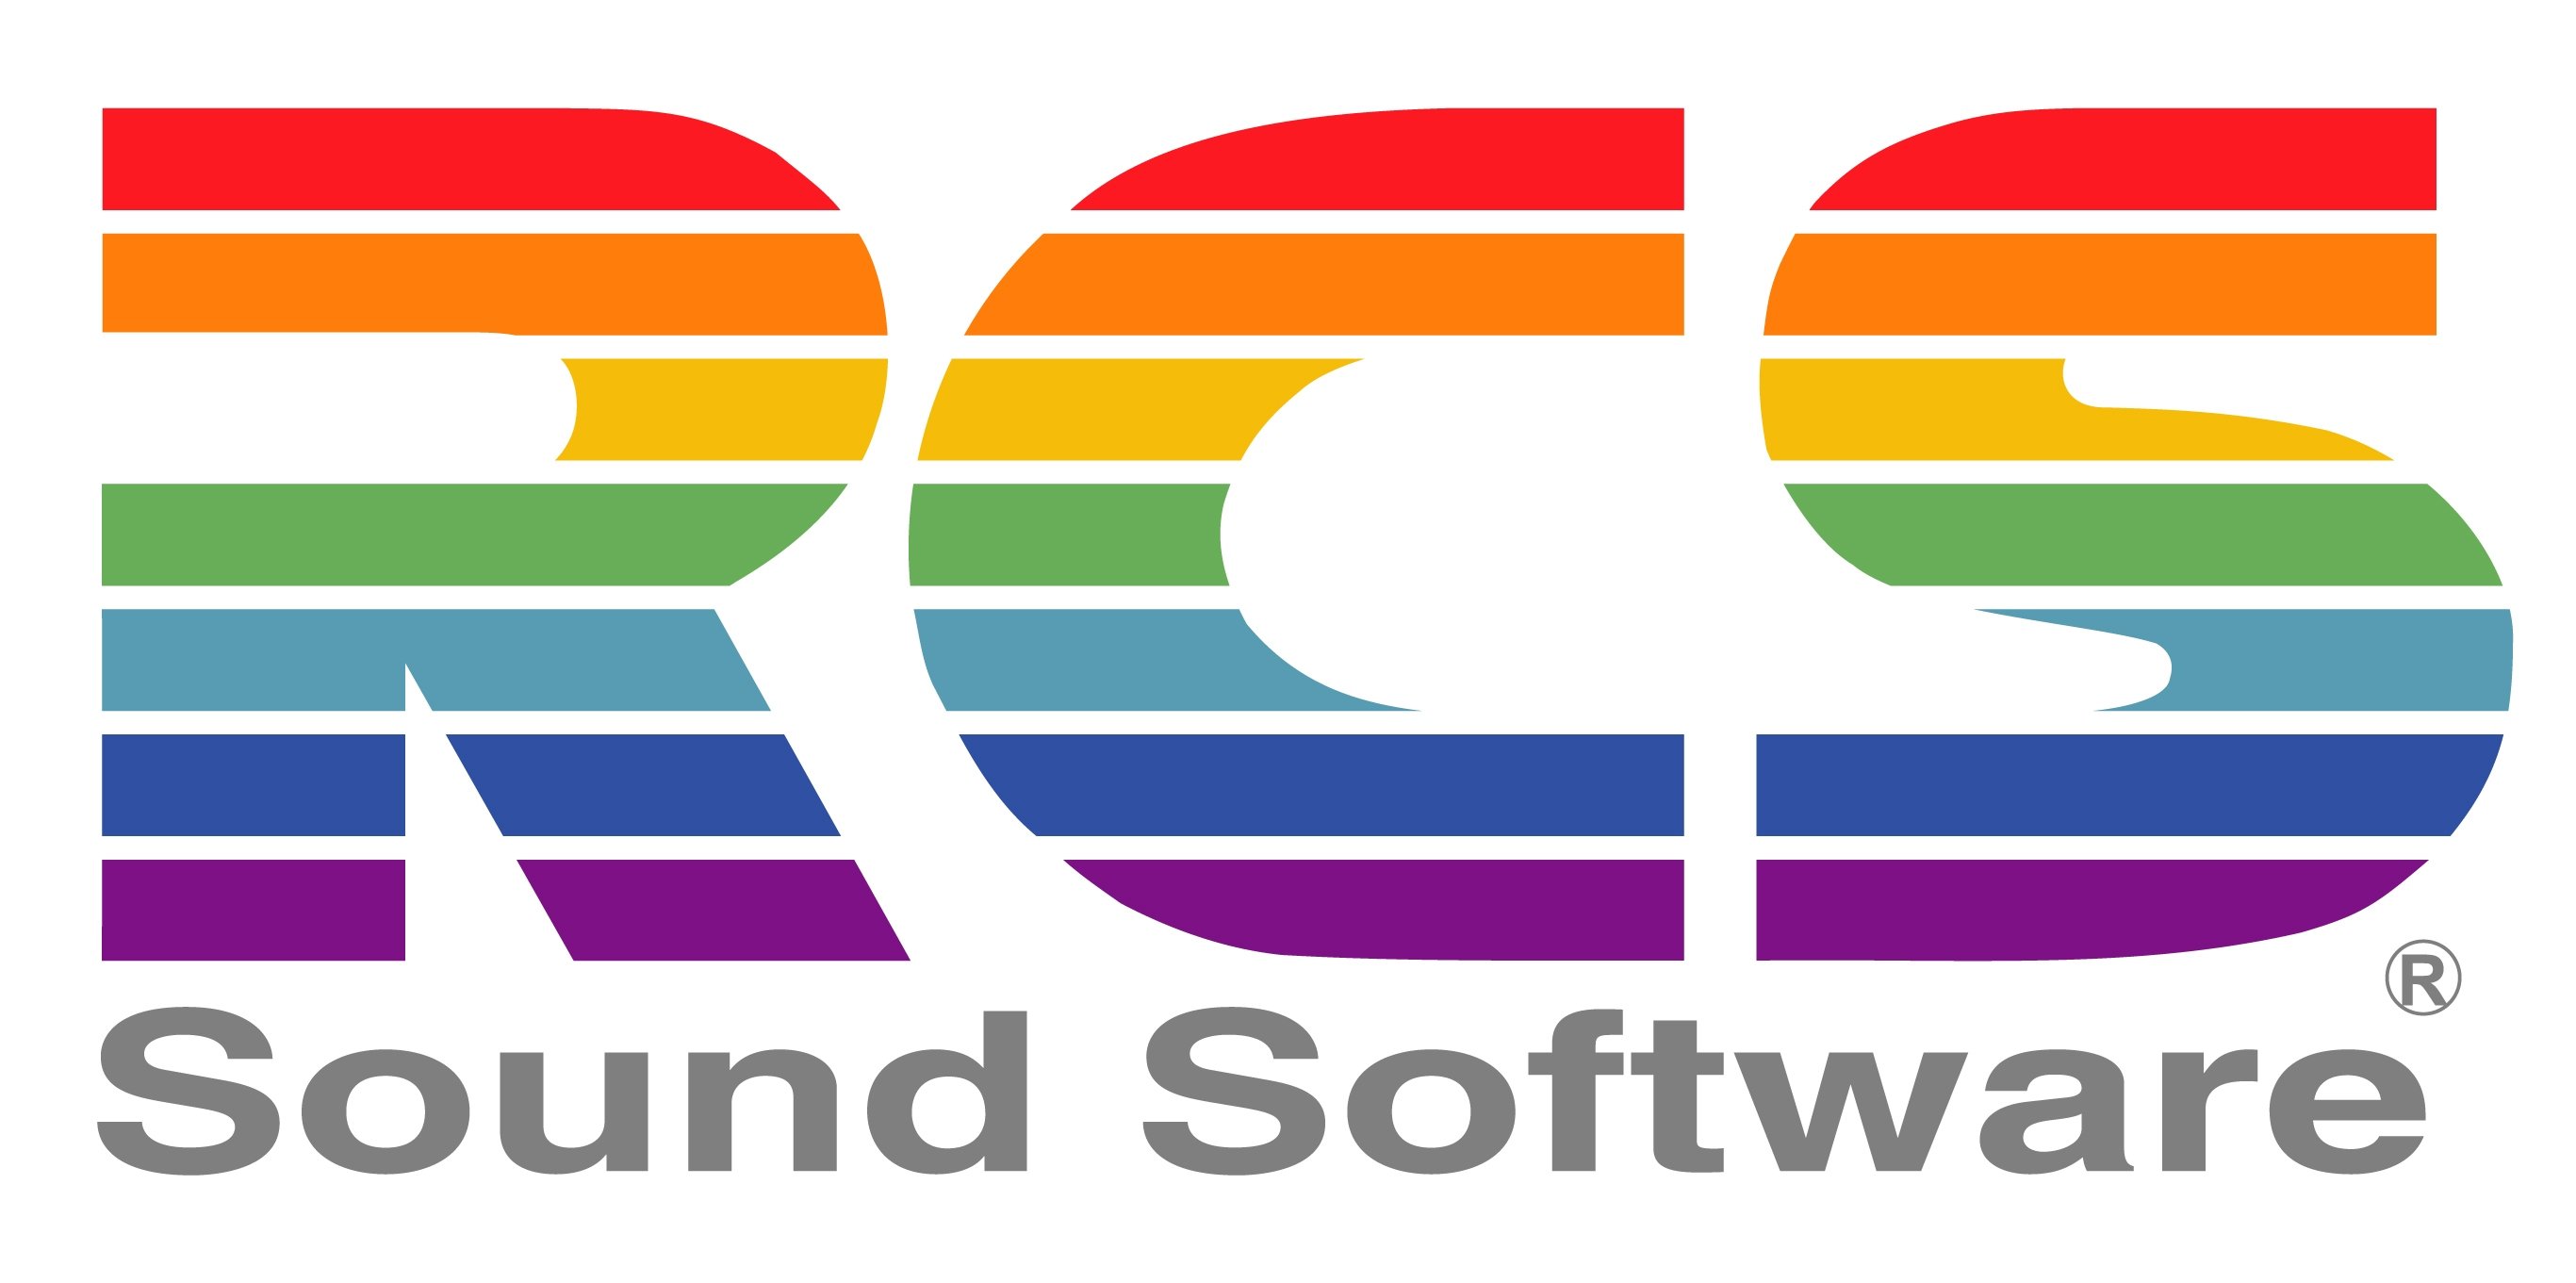 Rcs logo on white